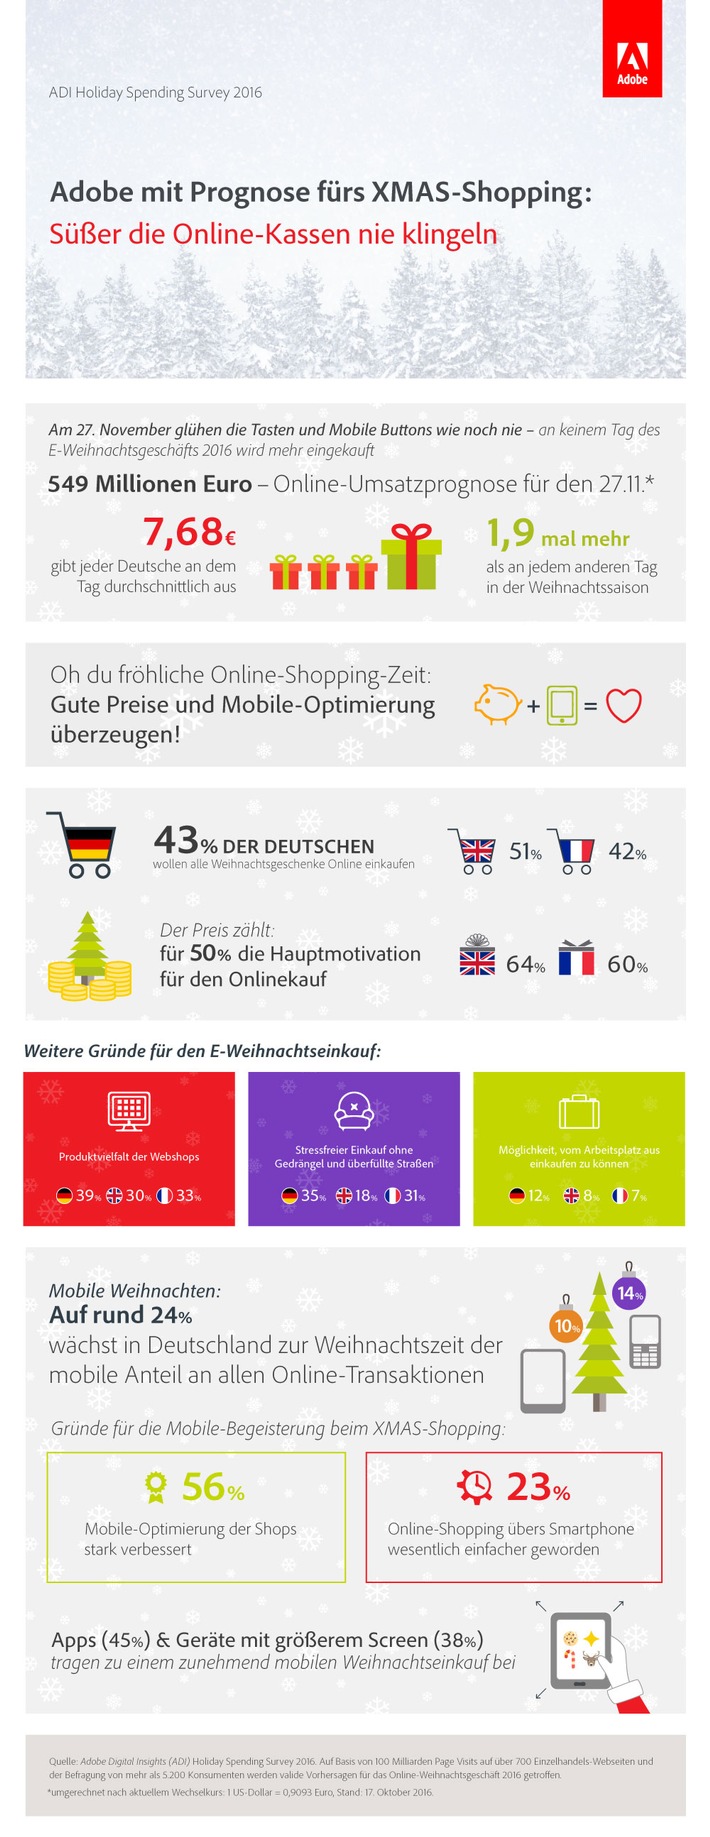 Am 1. Advent wird geshoppt: Deutsches E-Weihnachtsgeschäft 2016 wächst laut Vorhersage um 10 Prozent